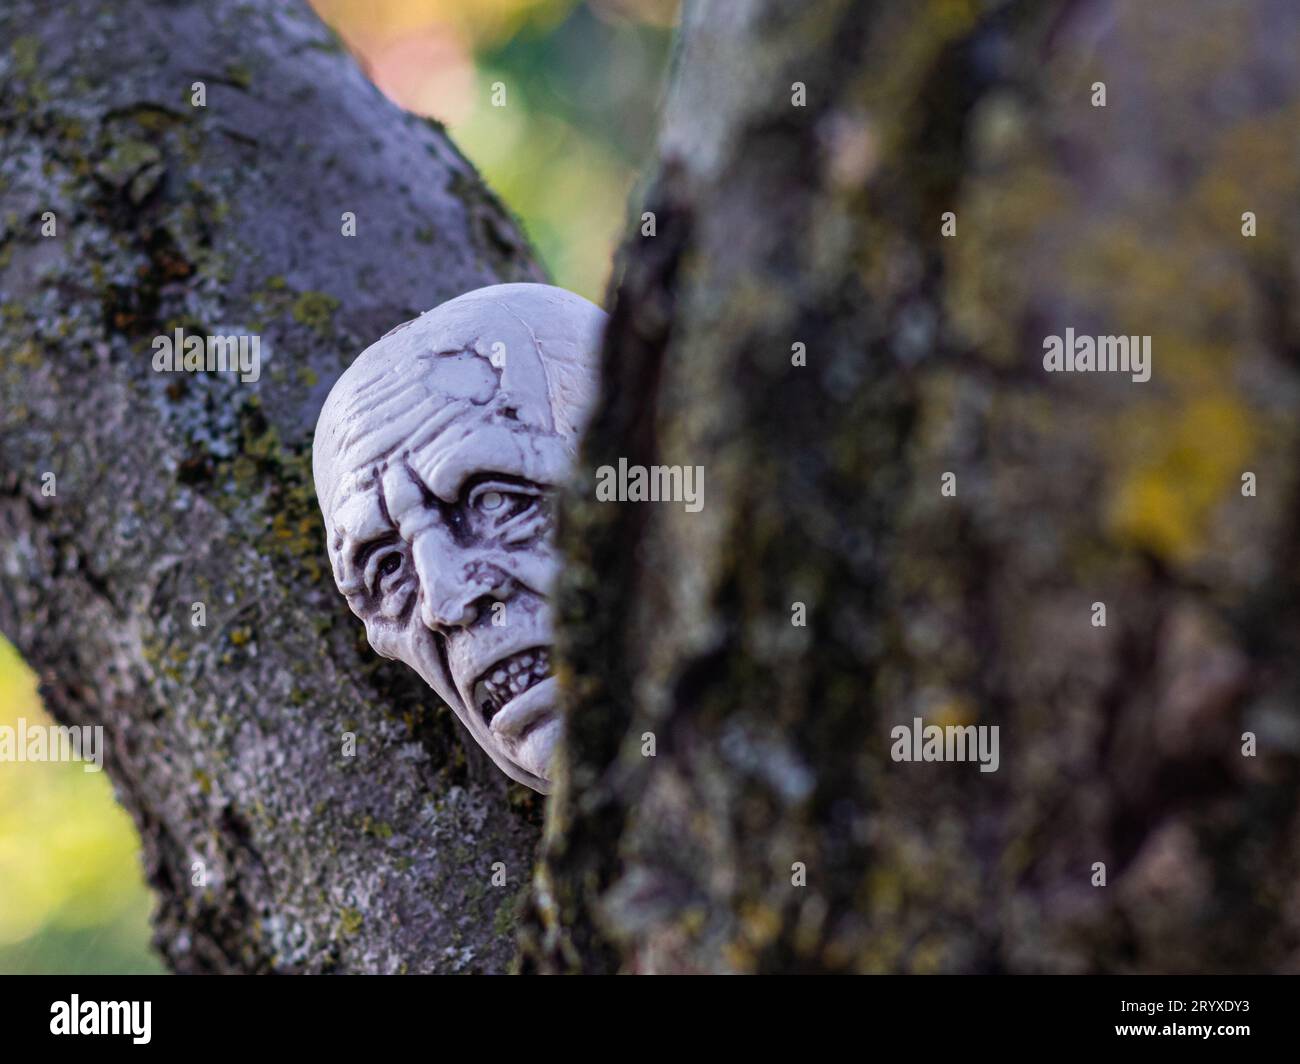 Accueillez les morts-vivants dans vos festivités d'Halloween avec cette tête de zombie en plastique méticuleusement conçue, incroyablement réaliste au milieu de la lune et envahie par la végétation Banque D'Images